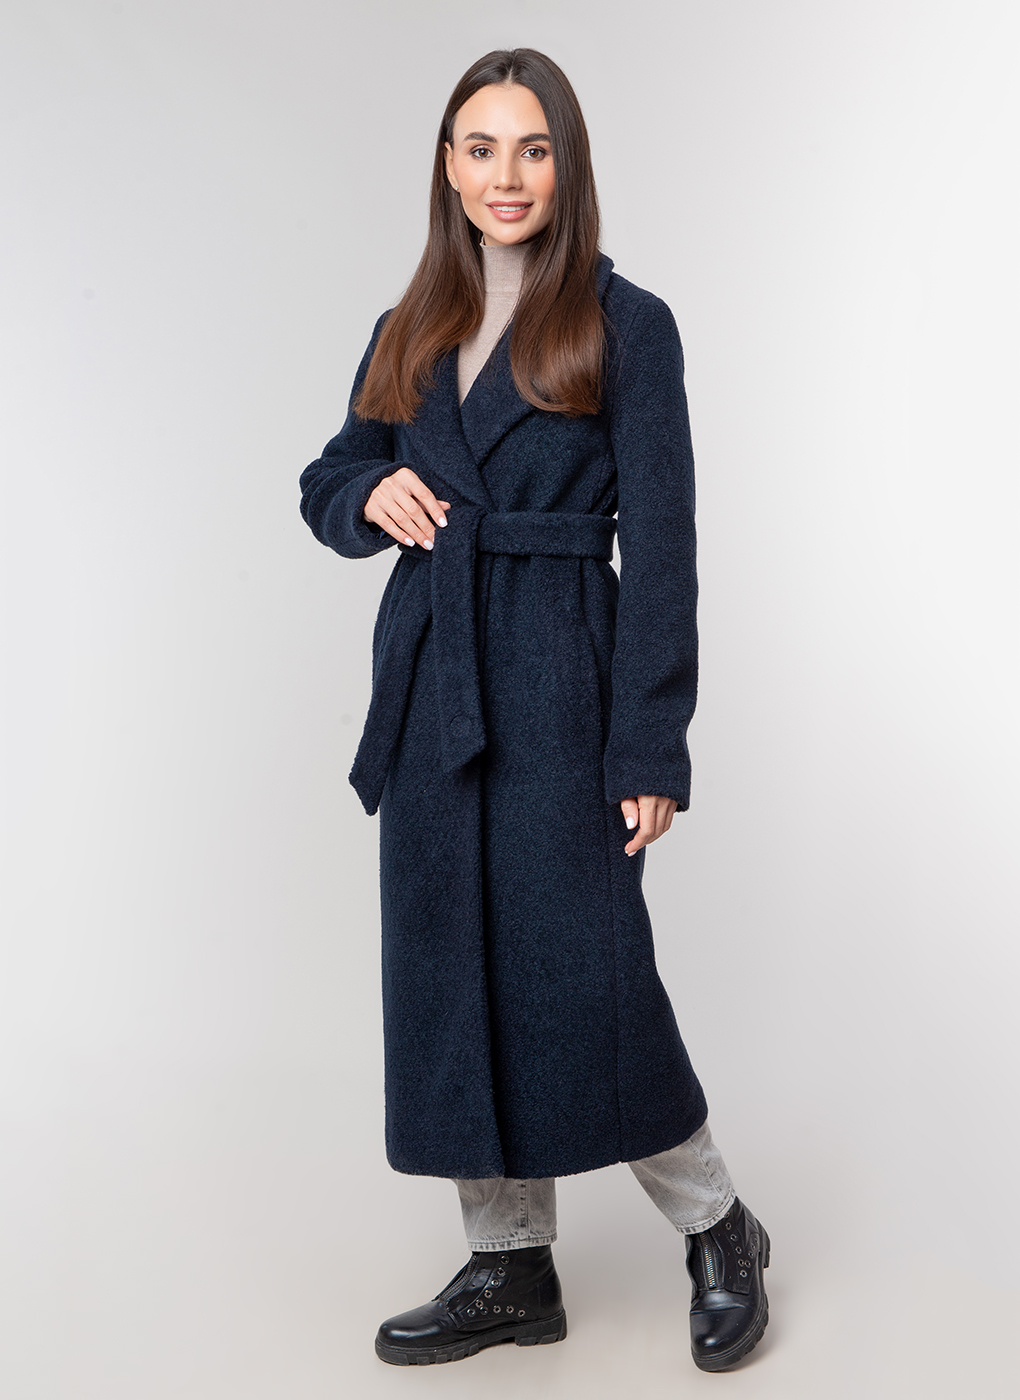 Пальто женское Каляев 59121 синее 42 RU